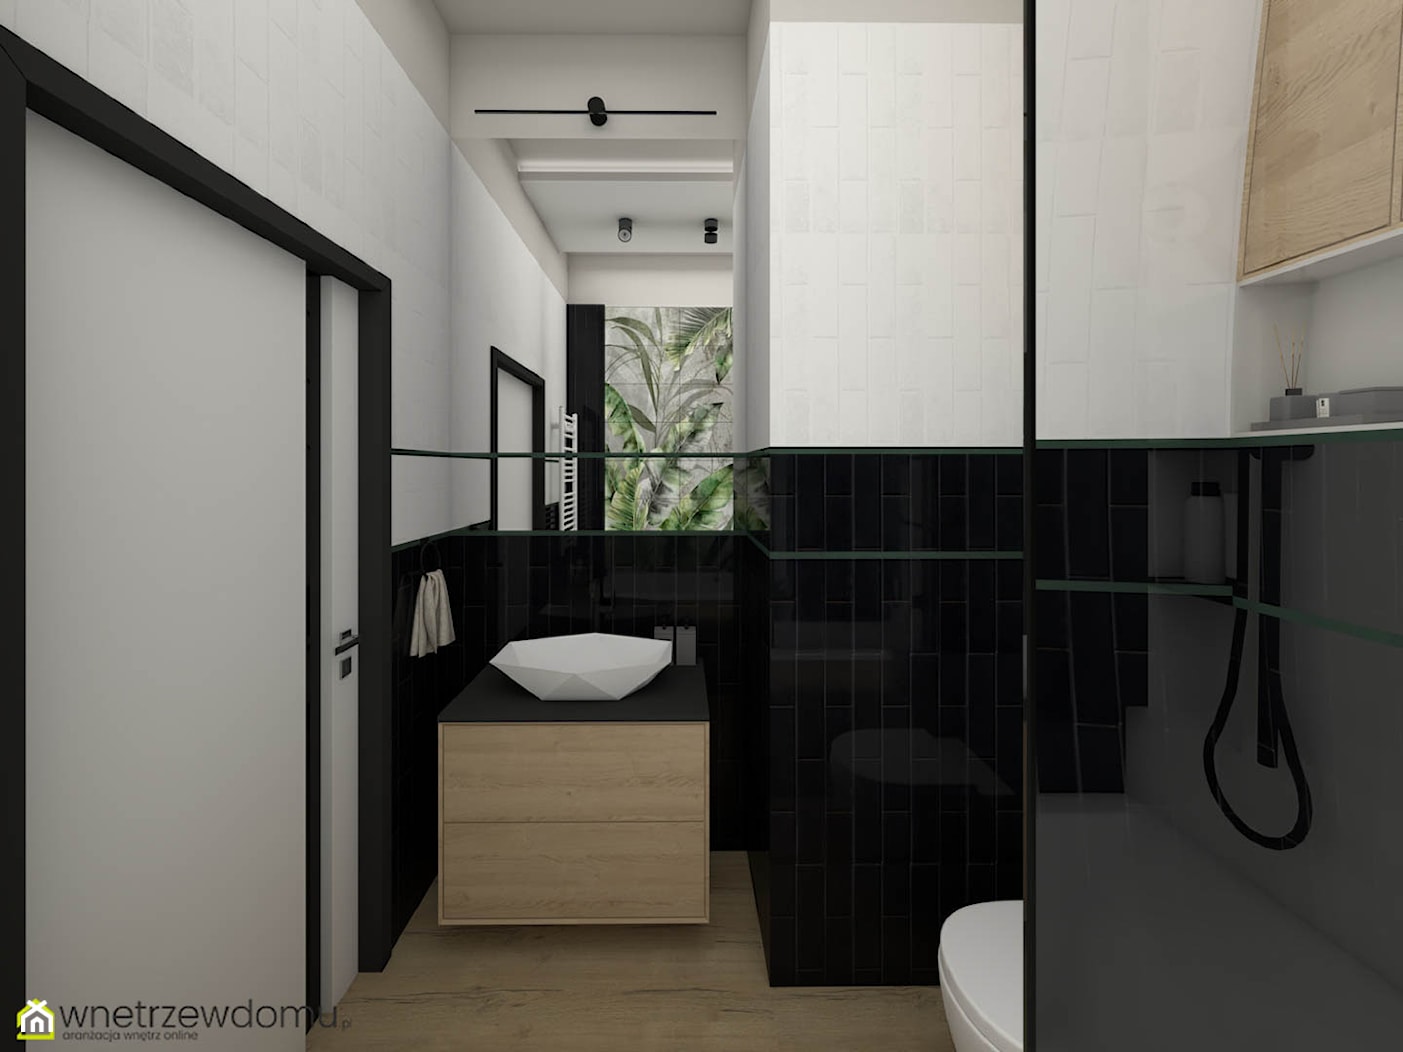 Łazienka w połączeniu czerni bieli i zieleni - zdjęcie od wnetrzewdomu - Homebook